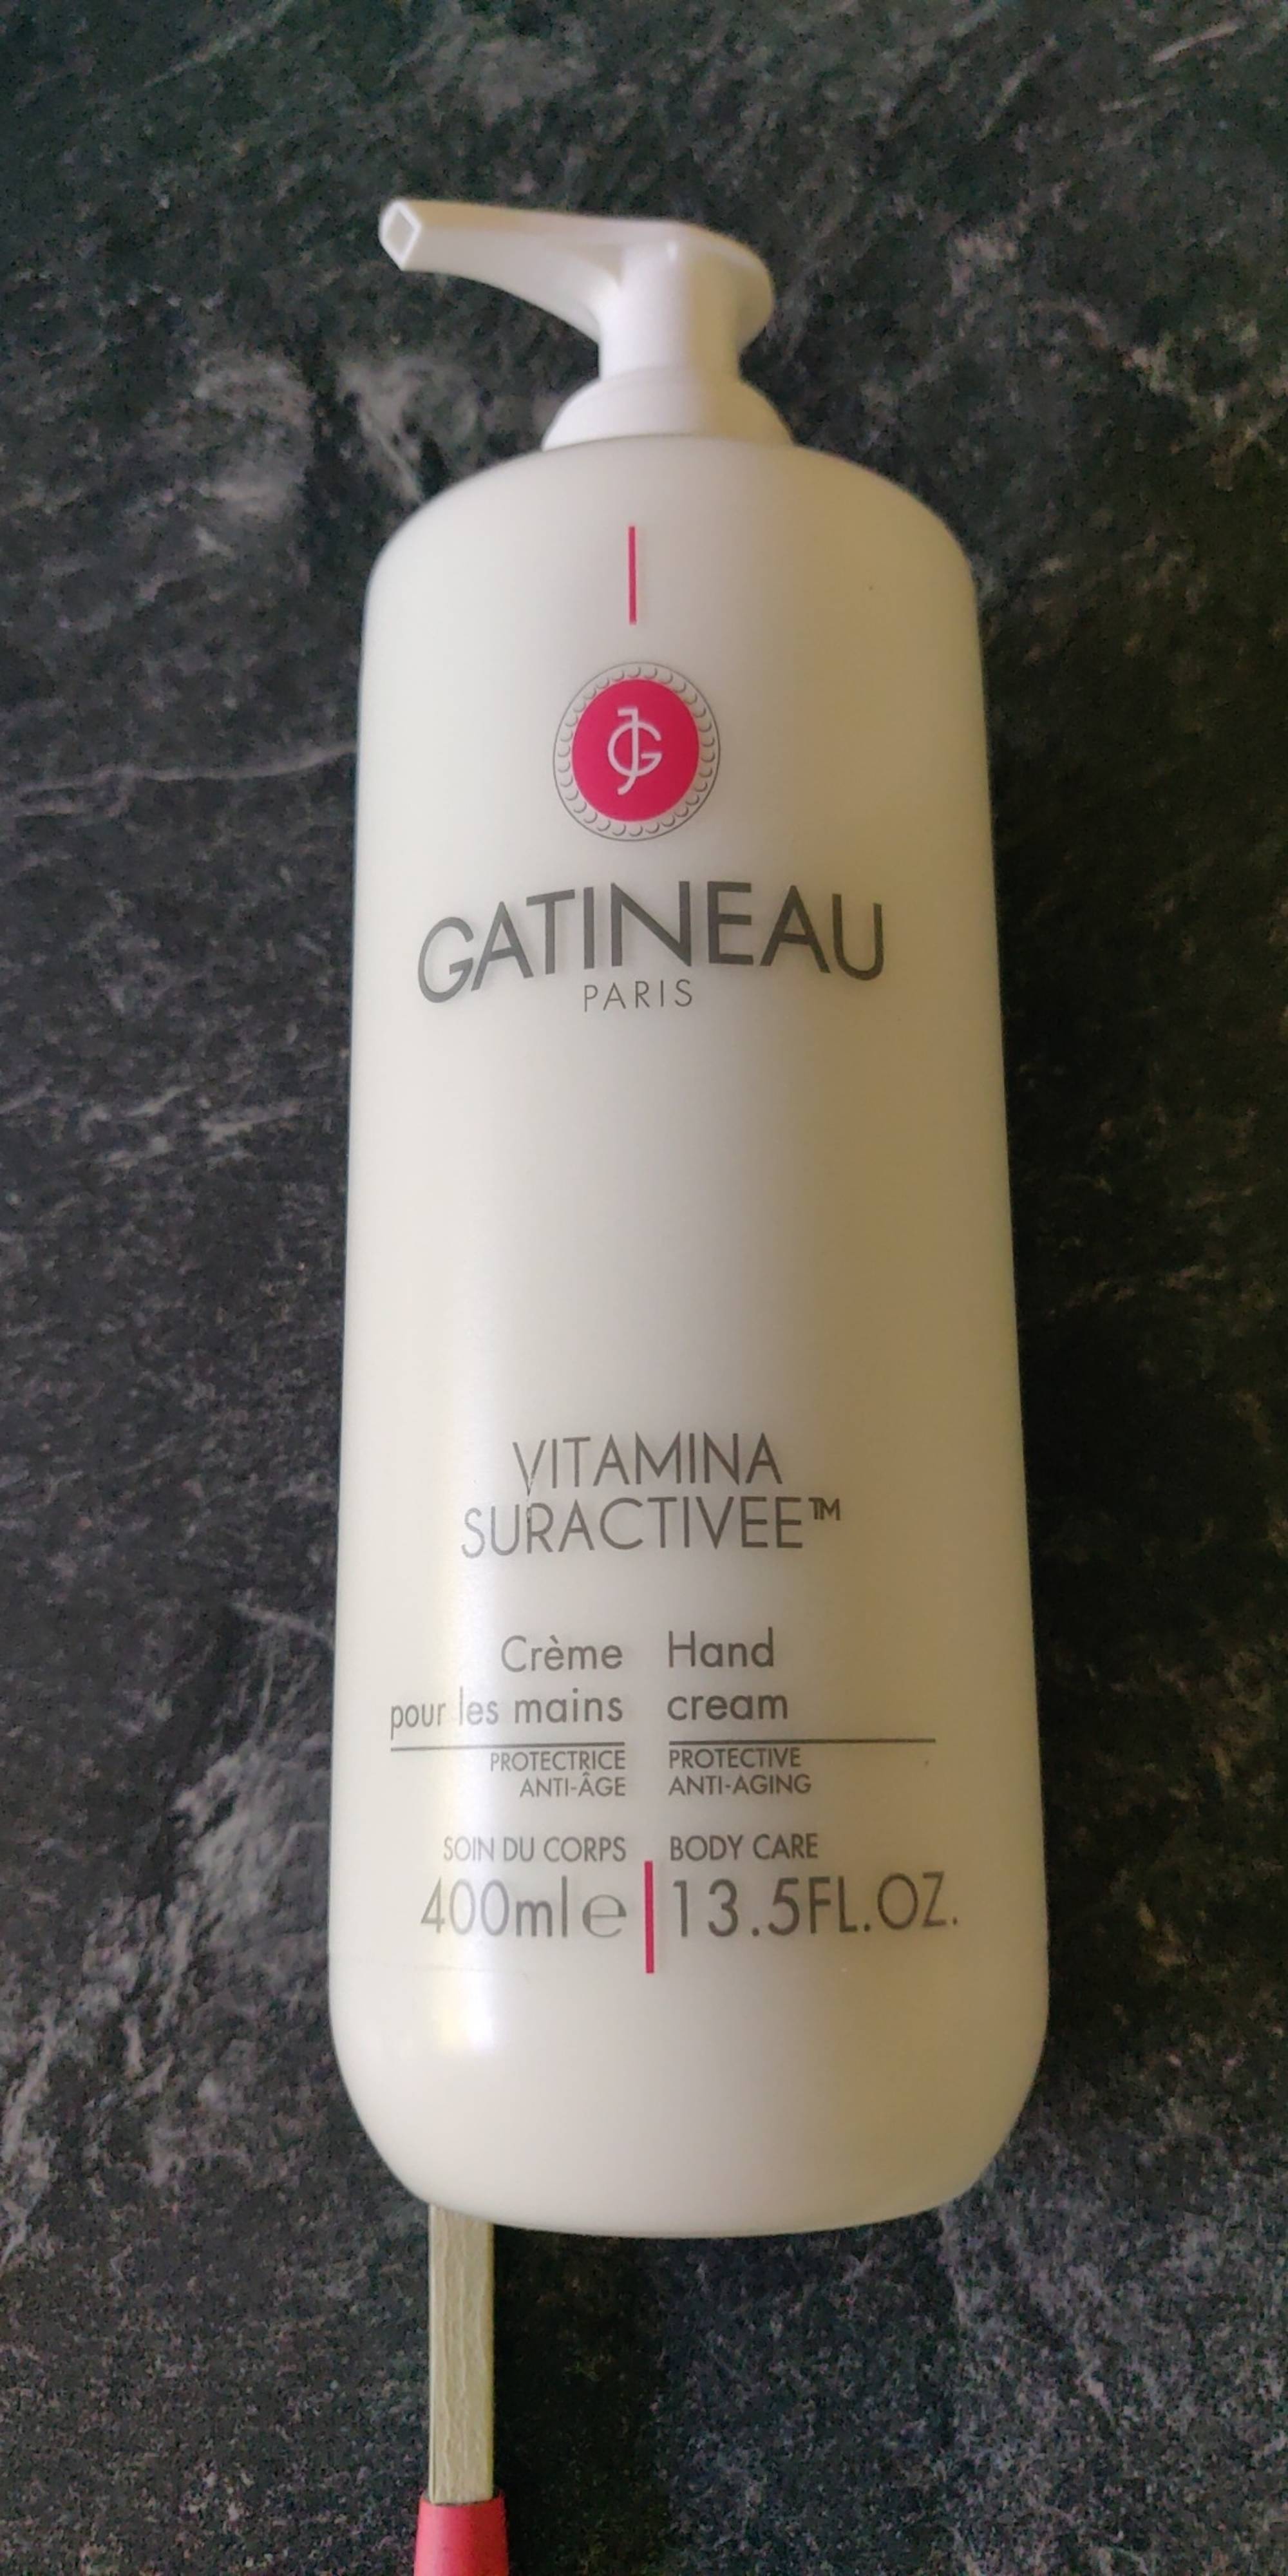 GATINEAU - Vitamina suractivée - Crème pour les mains